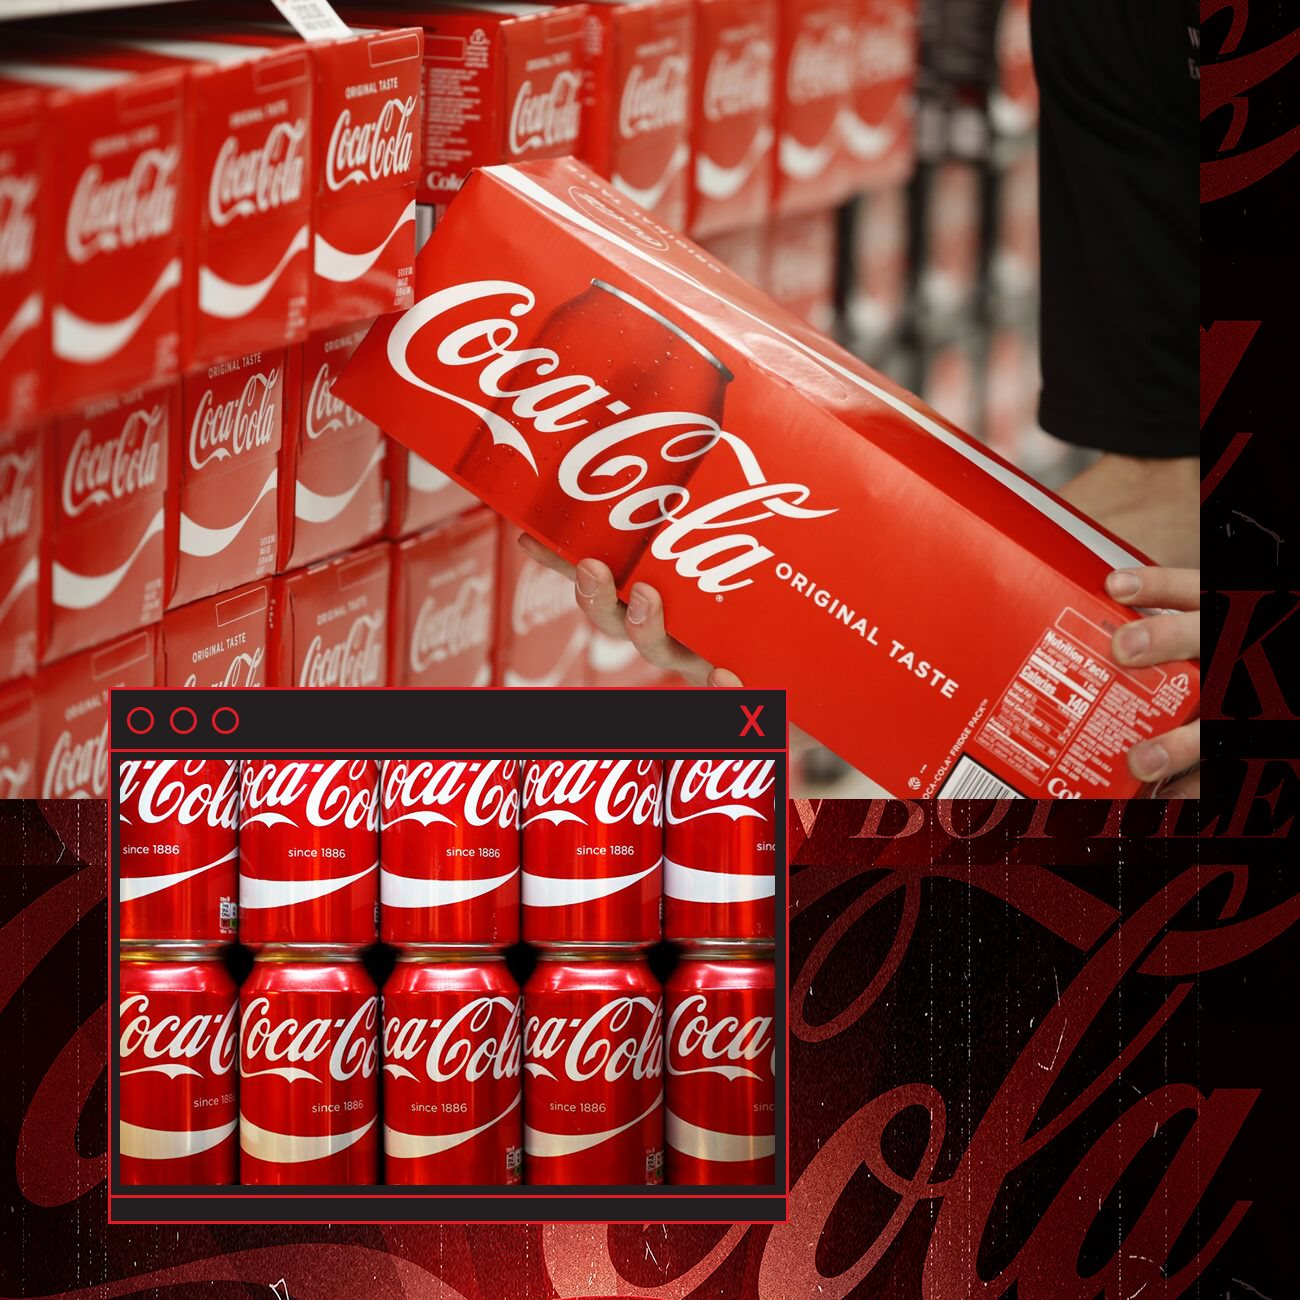 Vụ trộm bí mật kinh doanh chấn động: Coca Cola bị mất công thức trị giá 2.800 tỉ đồng, nữ thiên tài Trung Quốc suýt xây dựng trót lọt dây chuyền 'phake' ở quê hương - Ảnh 5.